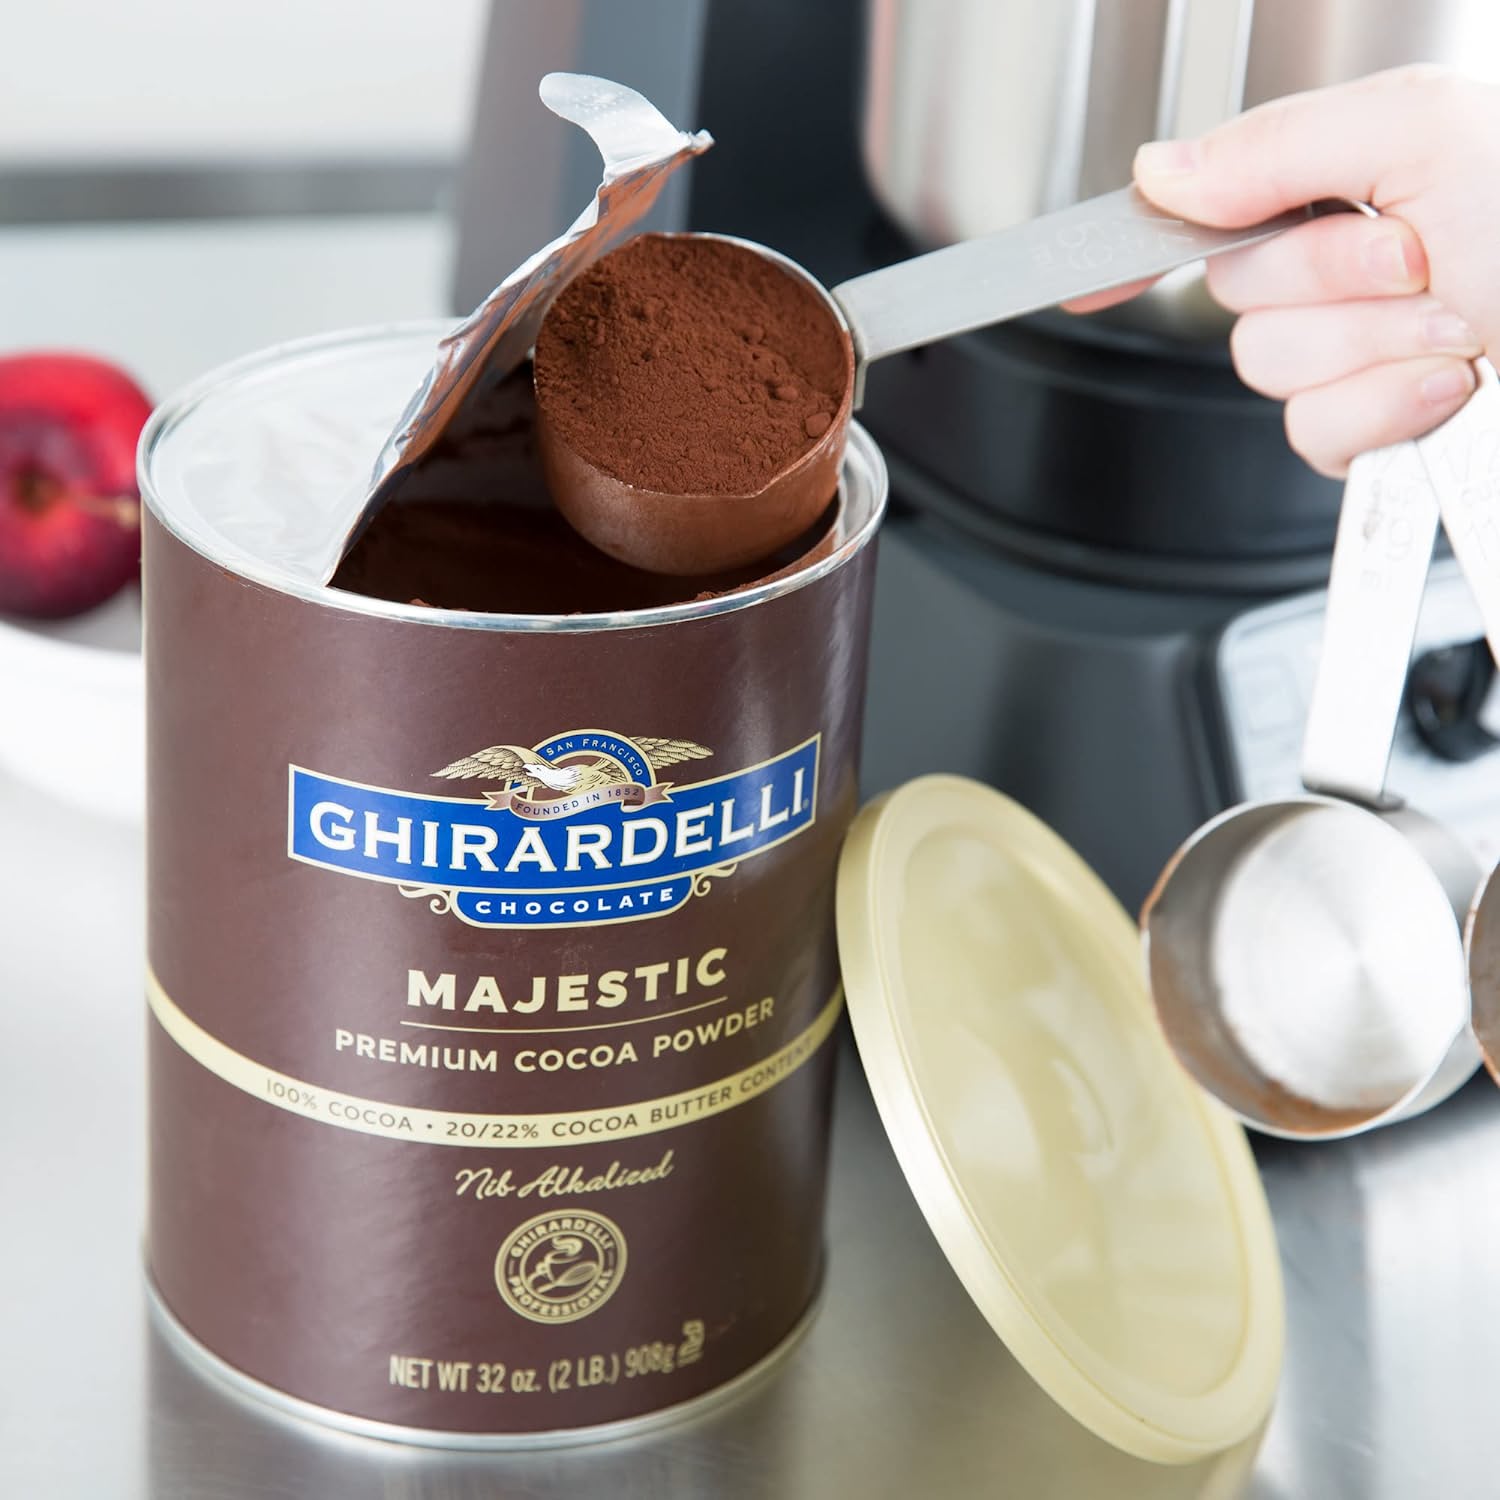 Ghirardelli Majestic Premium Cocoa Powder - 2 lb. Can-3